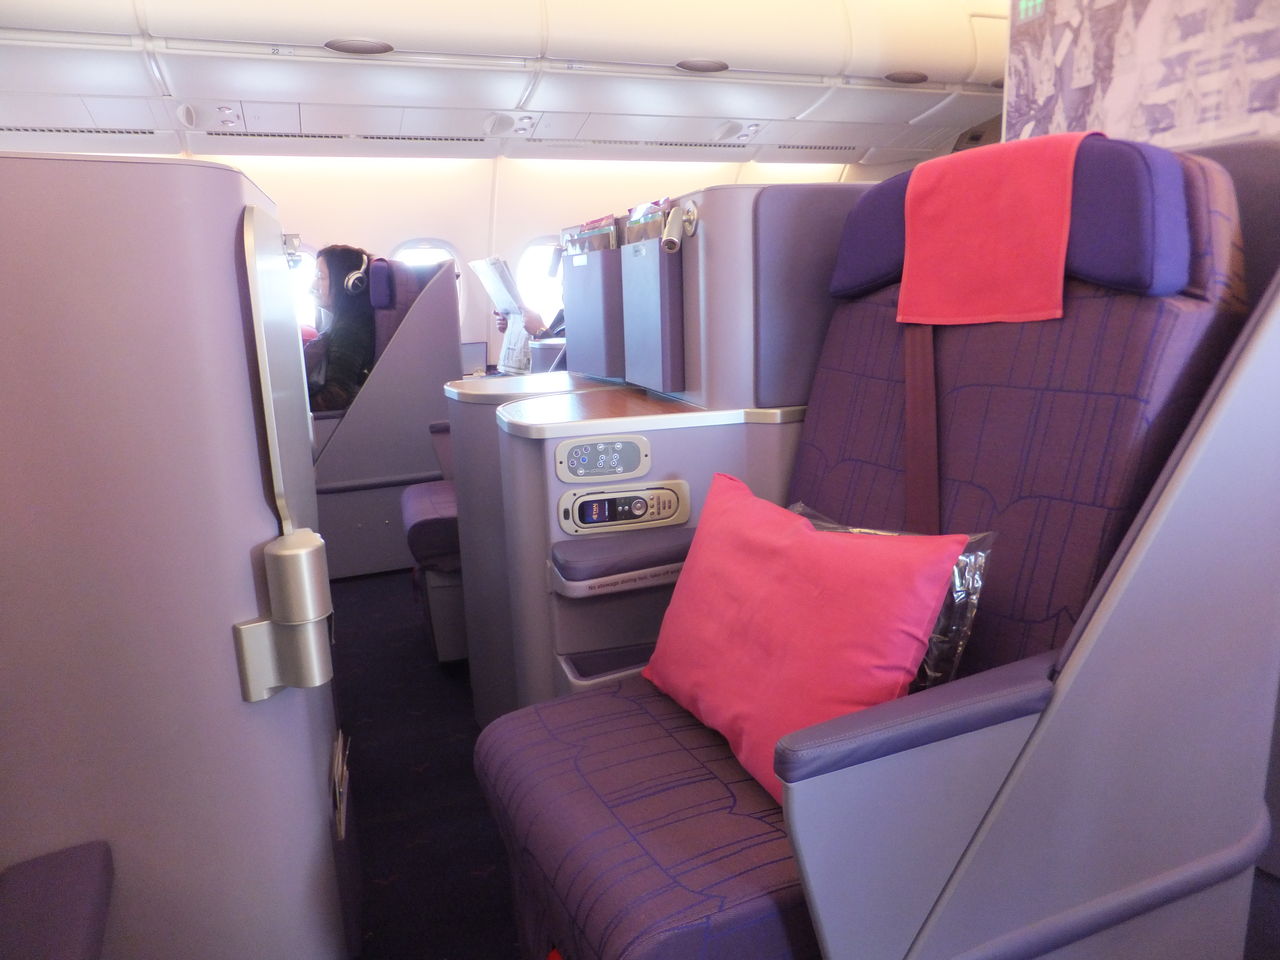 タイ航空 ビジネスクラス Tg641 640 Nrt Bkk A380 へっぽこshrink ぶらぶら日記